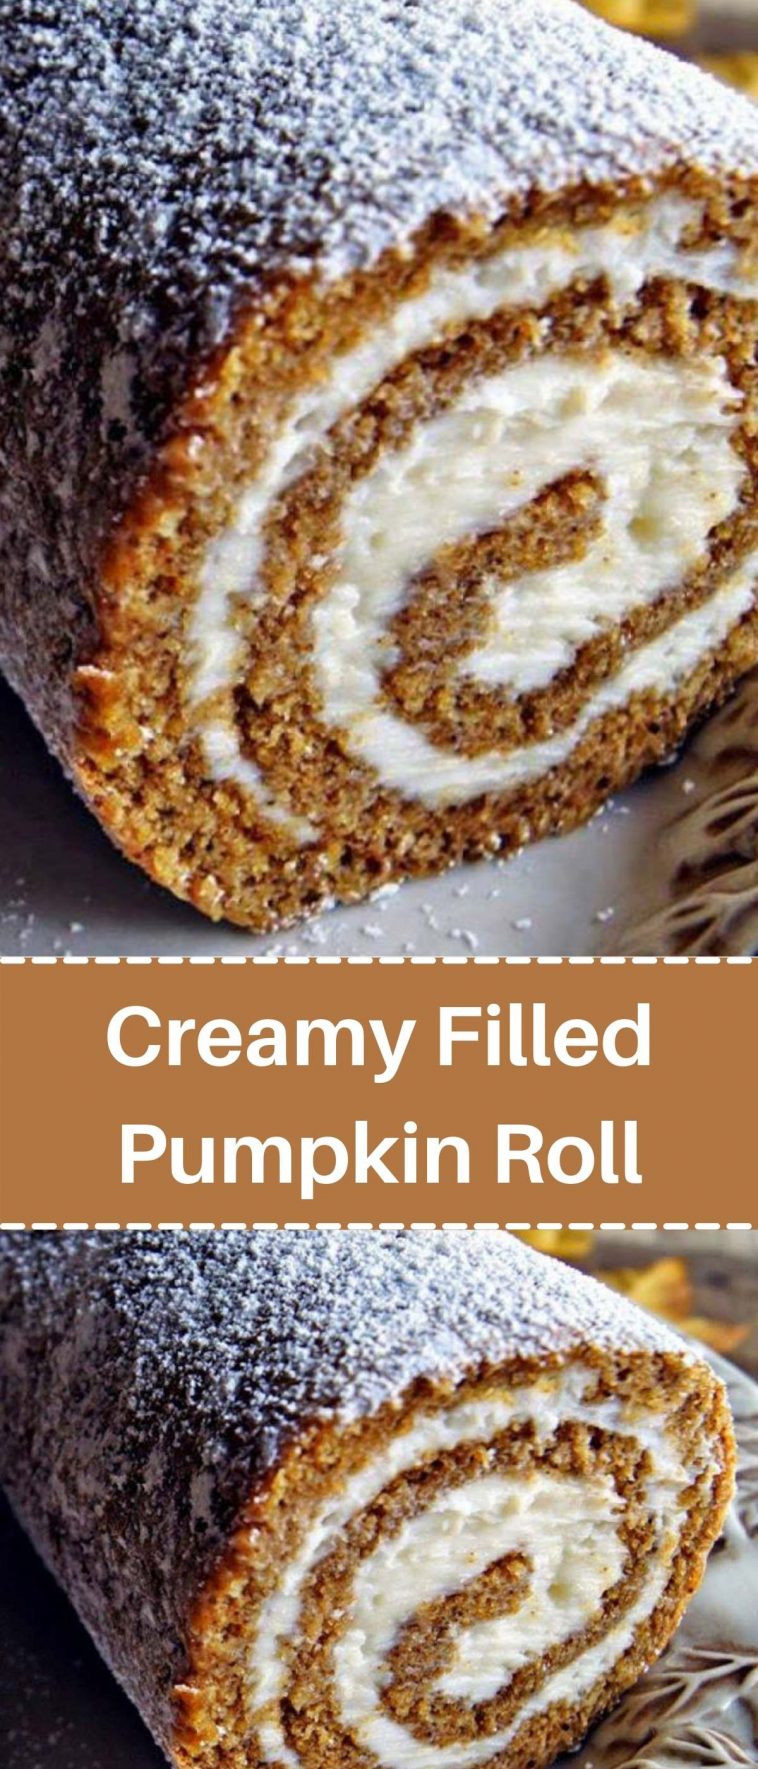 Creamy Filled Pumpkin Roll Recipe by Karen Cooks